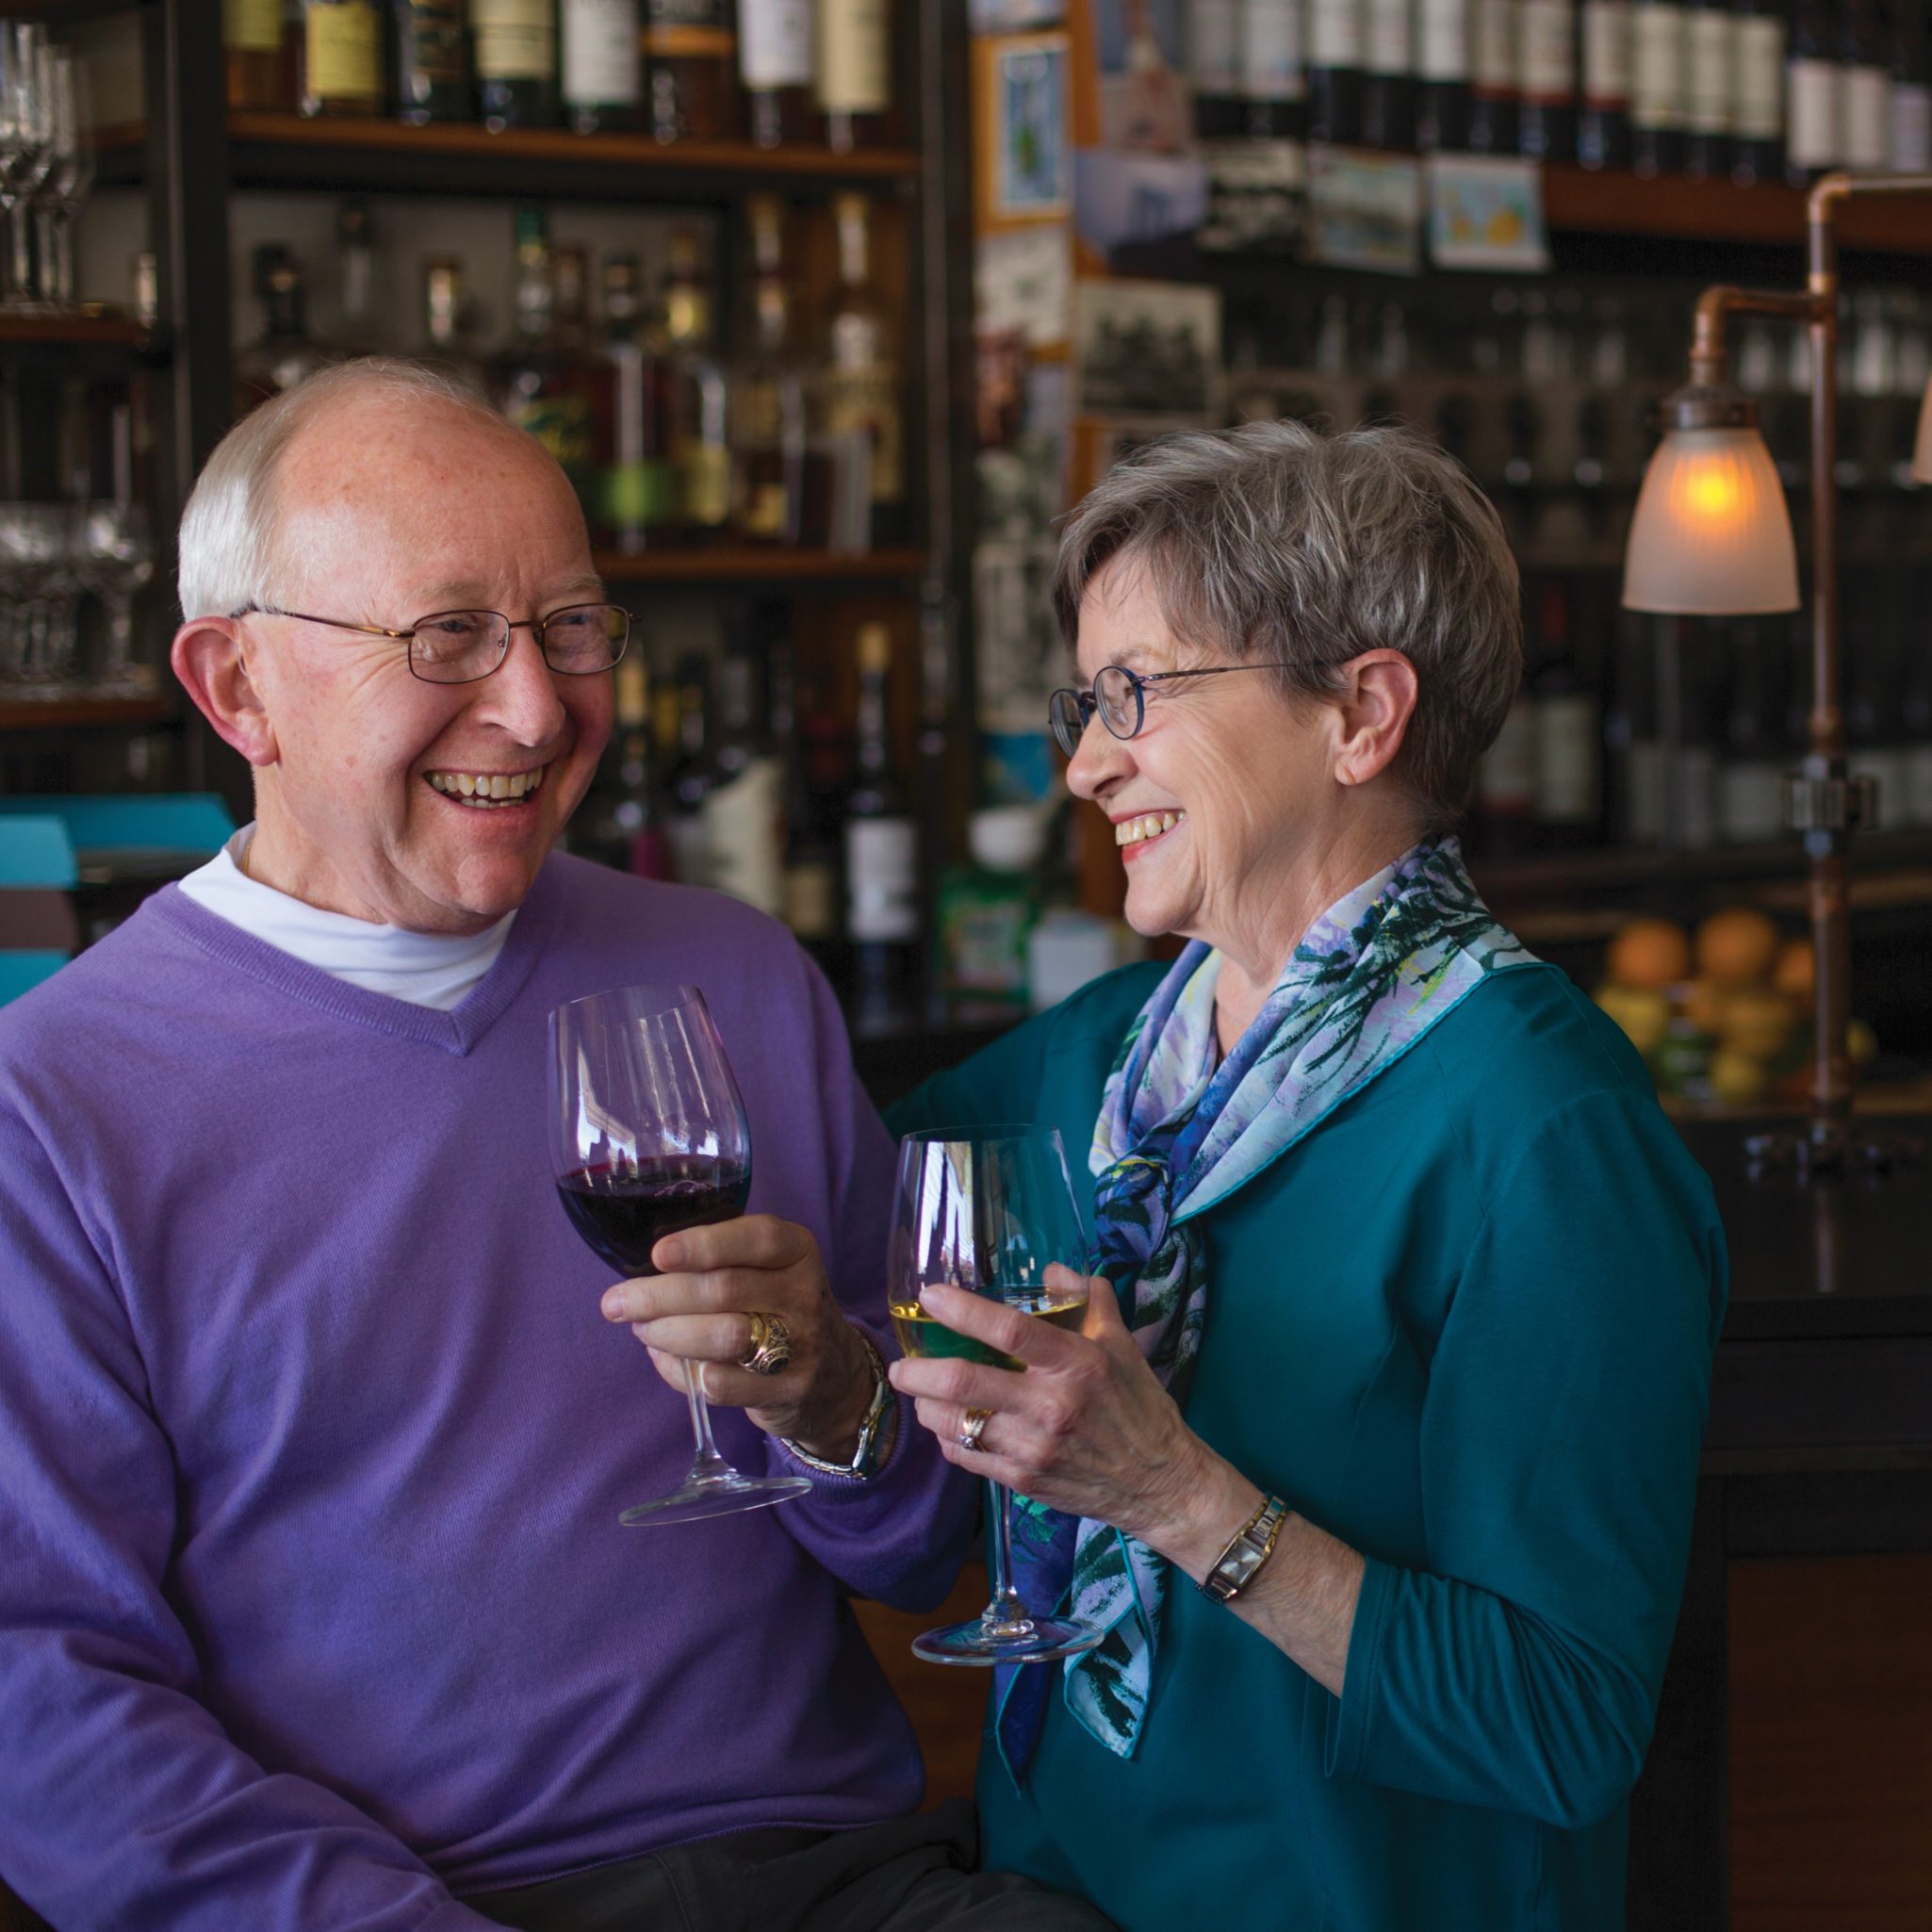 Senior couple enjoying wine together